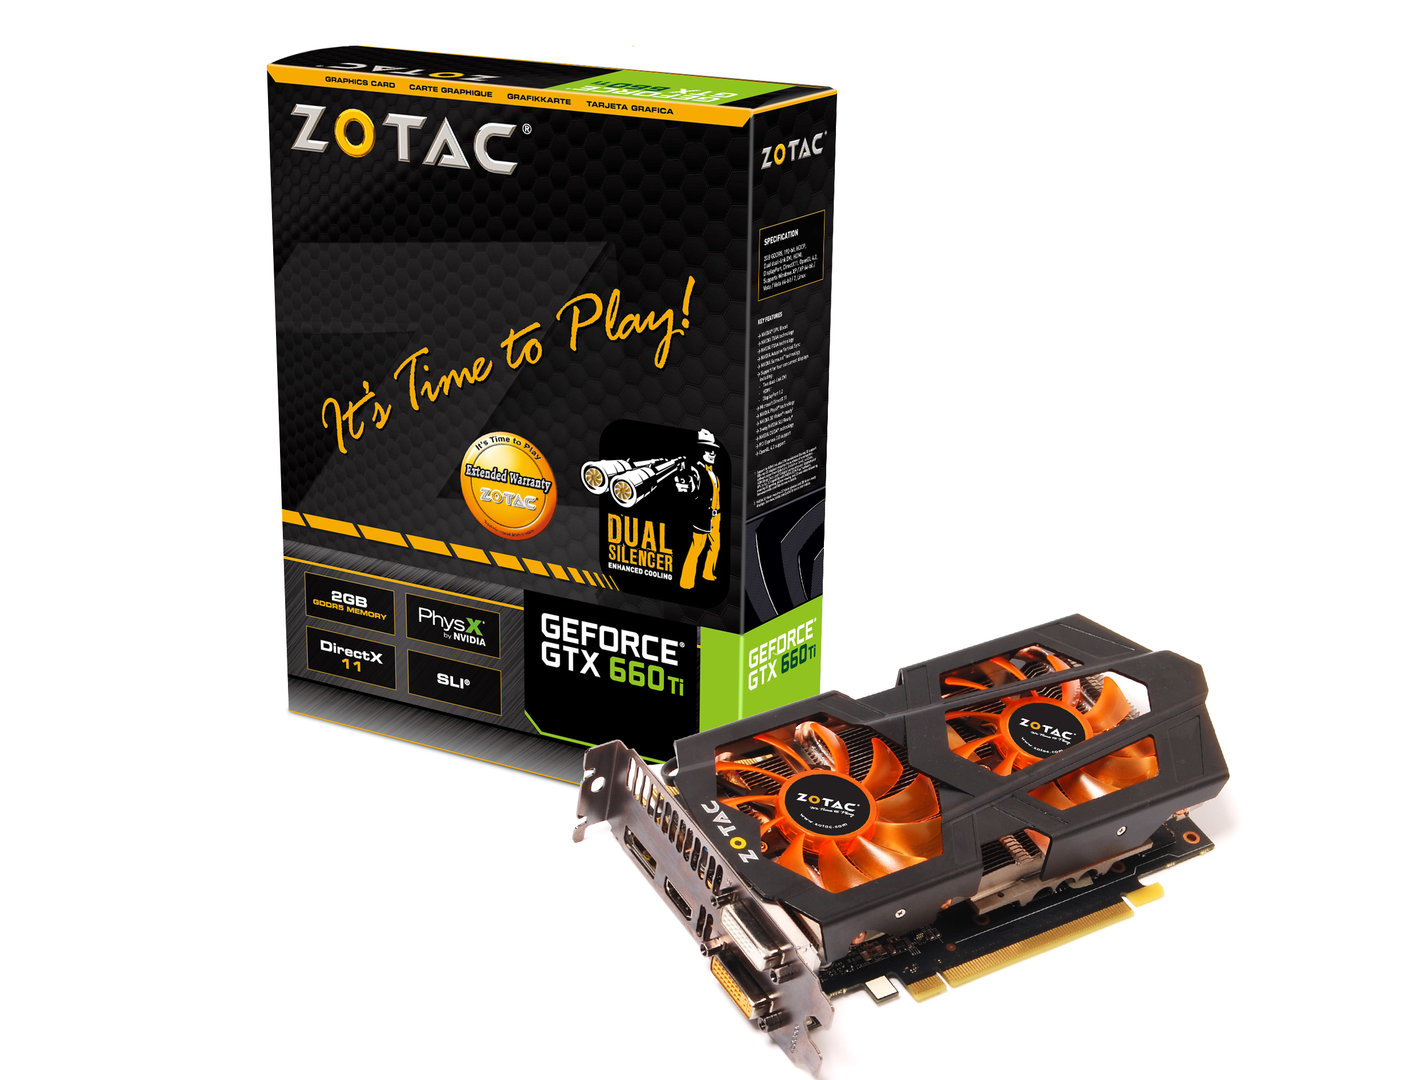 Zotac GeForce GTX 660 Ti